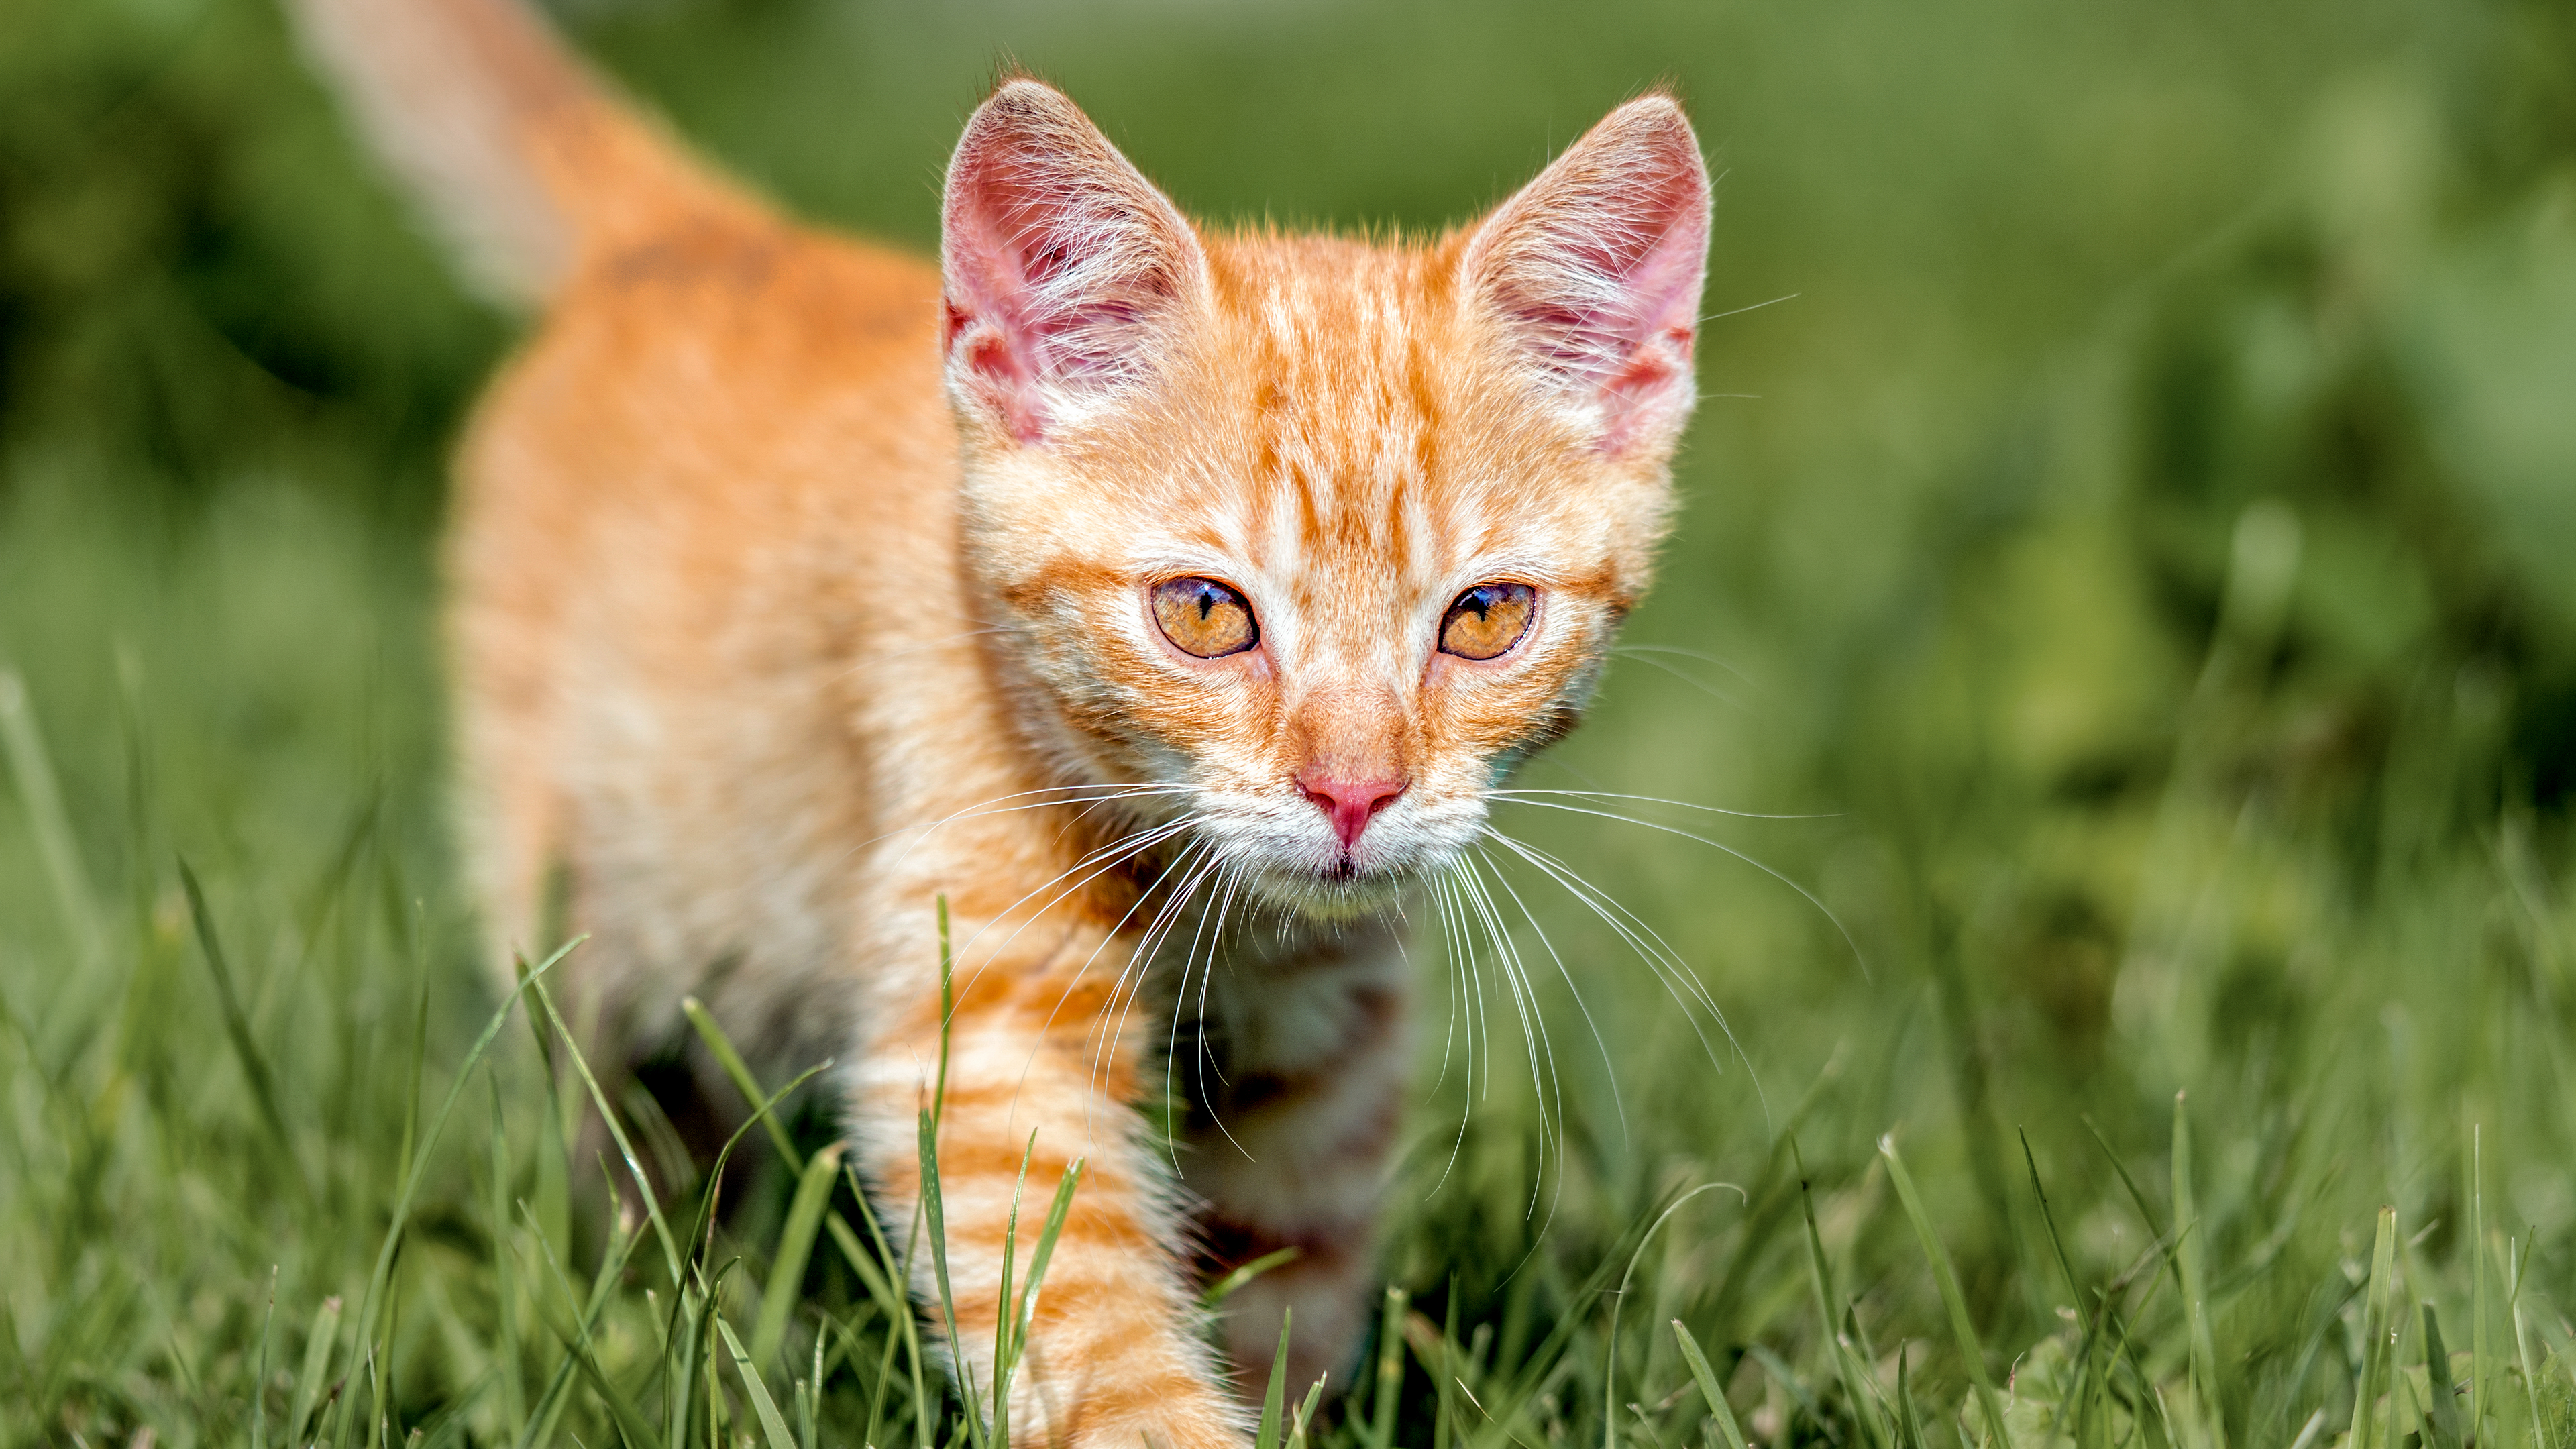 Ginger kitten outdoors walking through grass